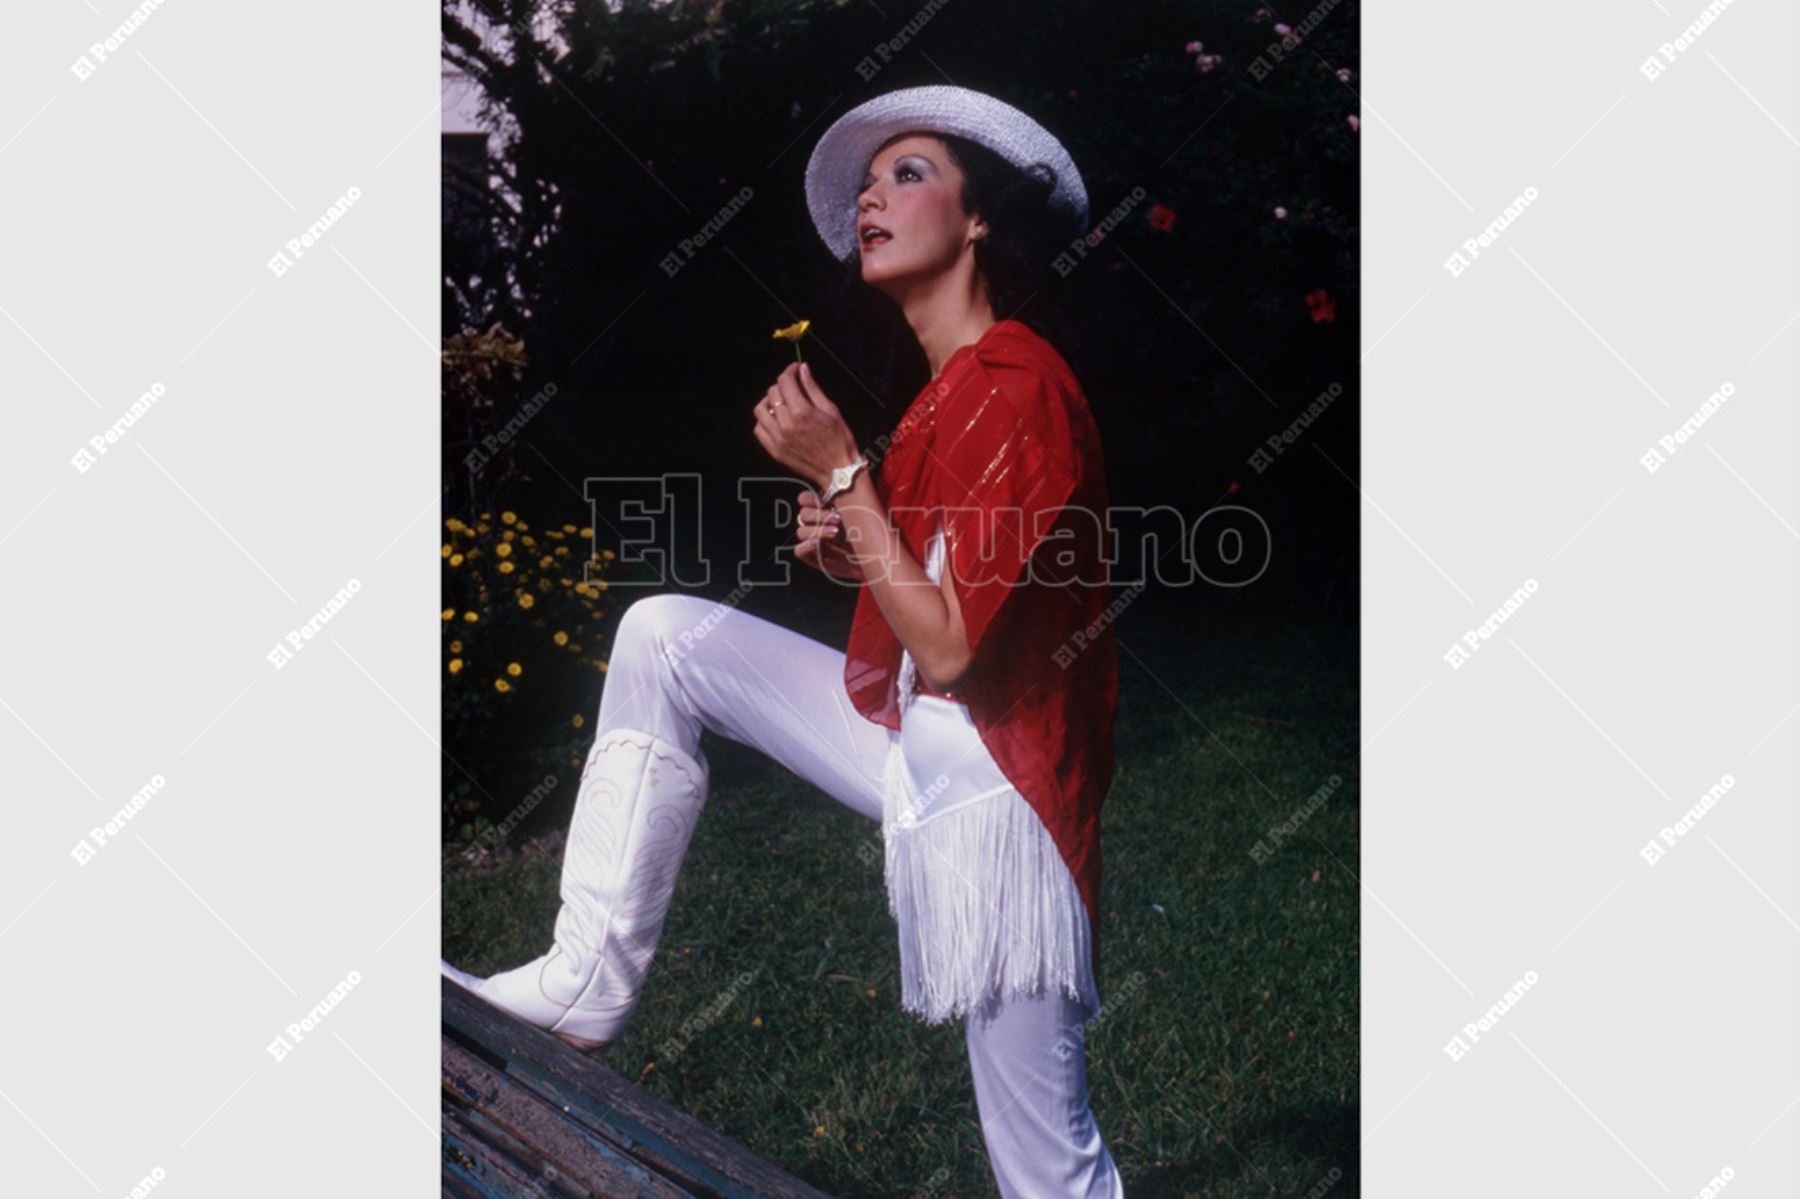 Lima - diciembre 1981 / Yola Polastri, cantautora, animadora infantil y conductora del programa Hola Yola de América Televisión. Foto: Archivo Histórico de El Peruano